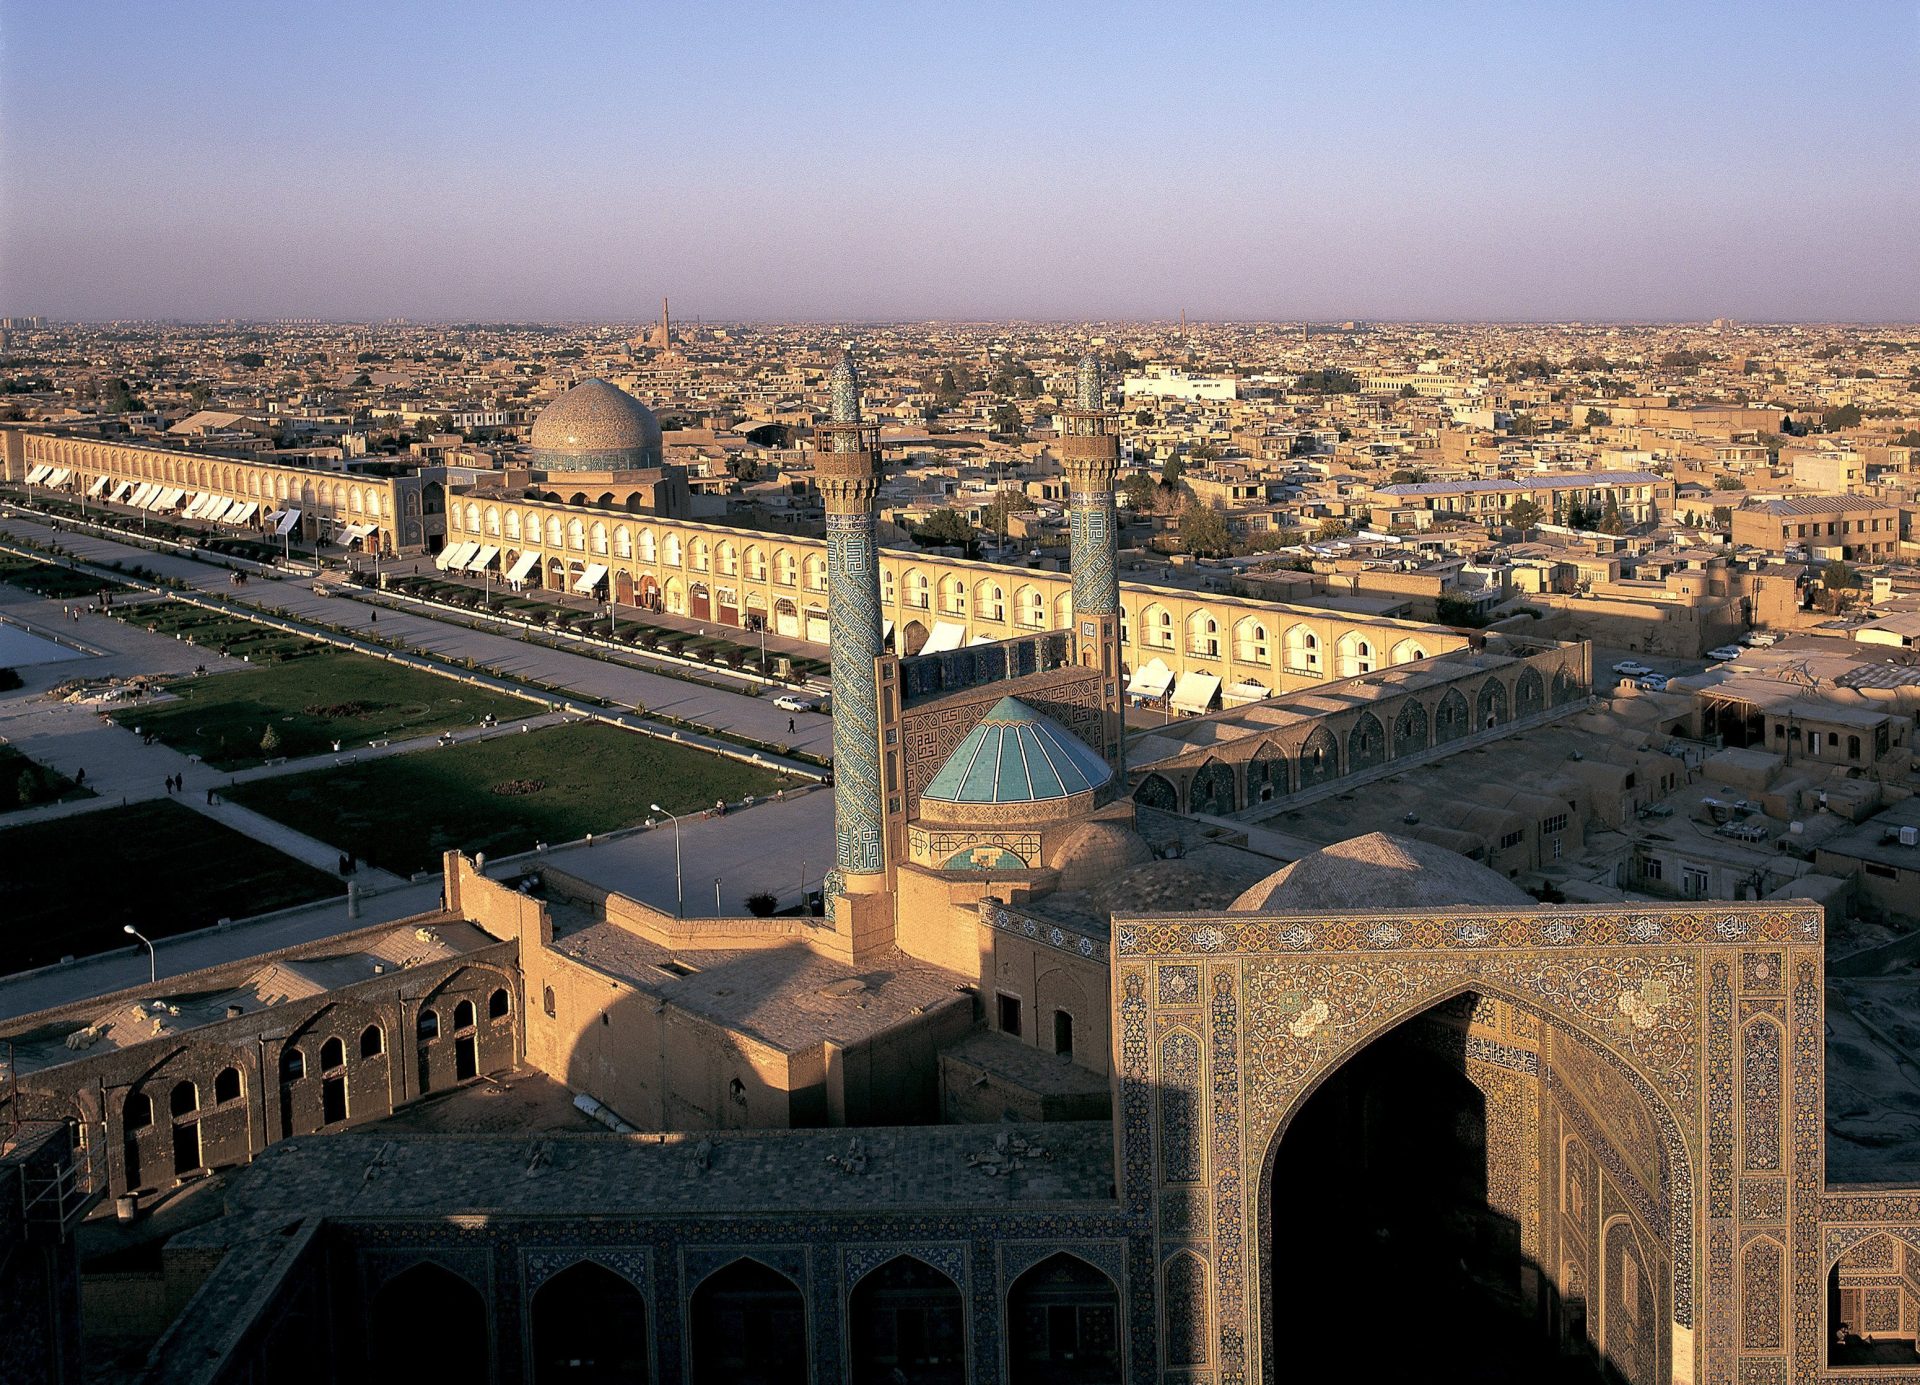 Fotografía facilitada por la Organización de Patrimonio Cultural, Artesanía y Turismo de Irán, de la plaza y mezquita de Isfahán. Foto: EFE